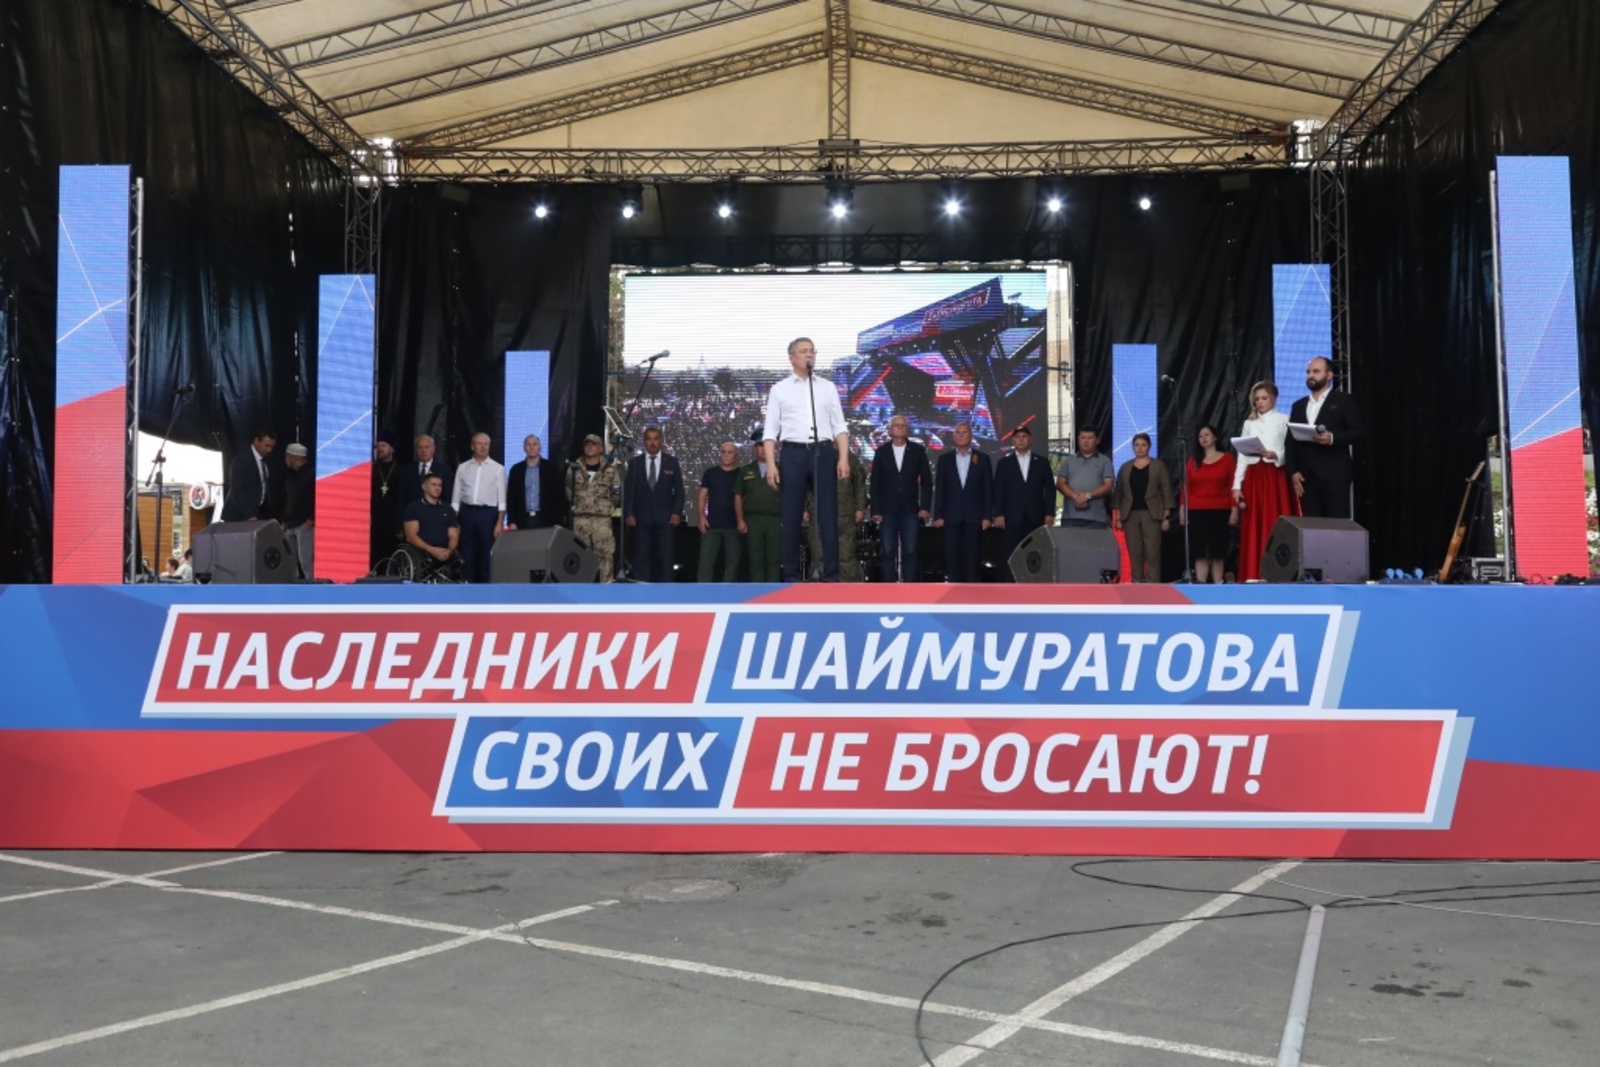 23 сентября в Уфе прошел митинг-концерт «Потомки Шаймуратова своих не бросают!»